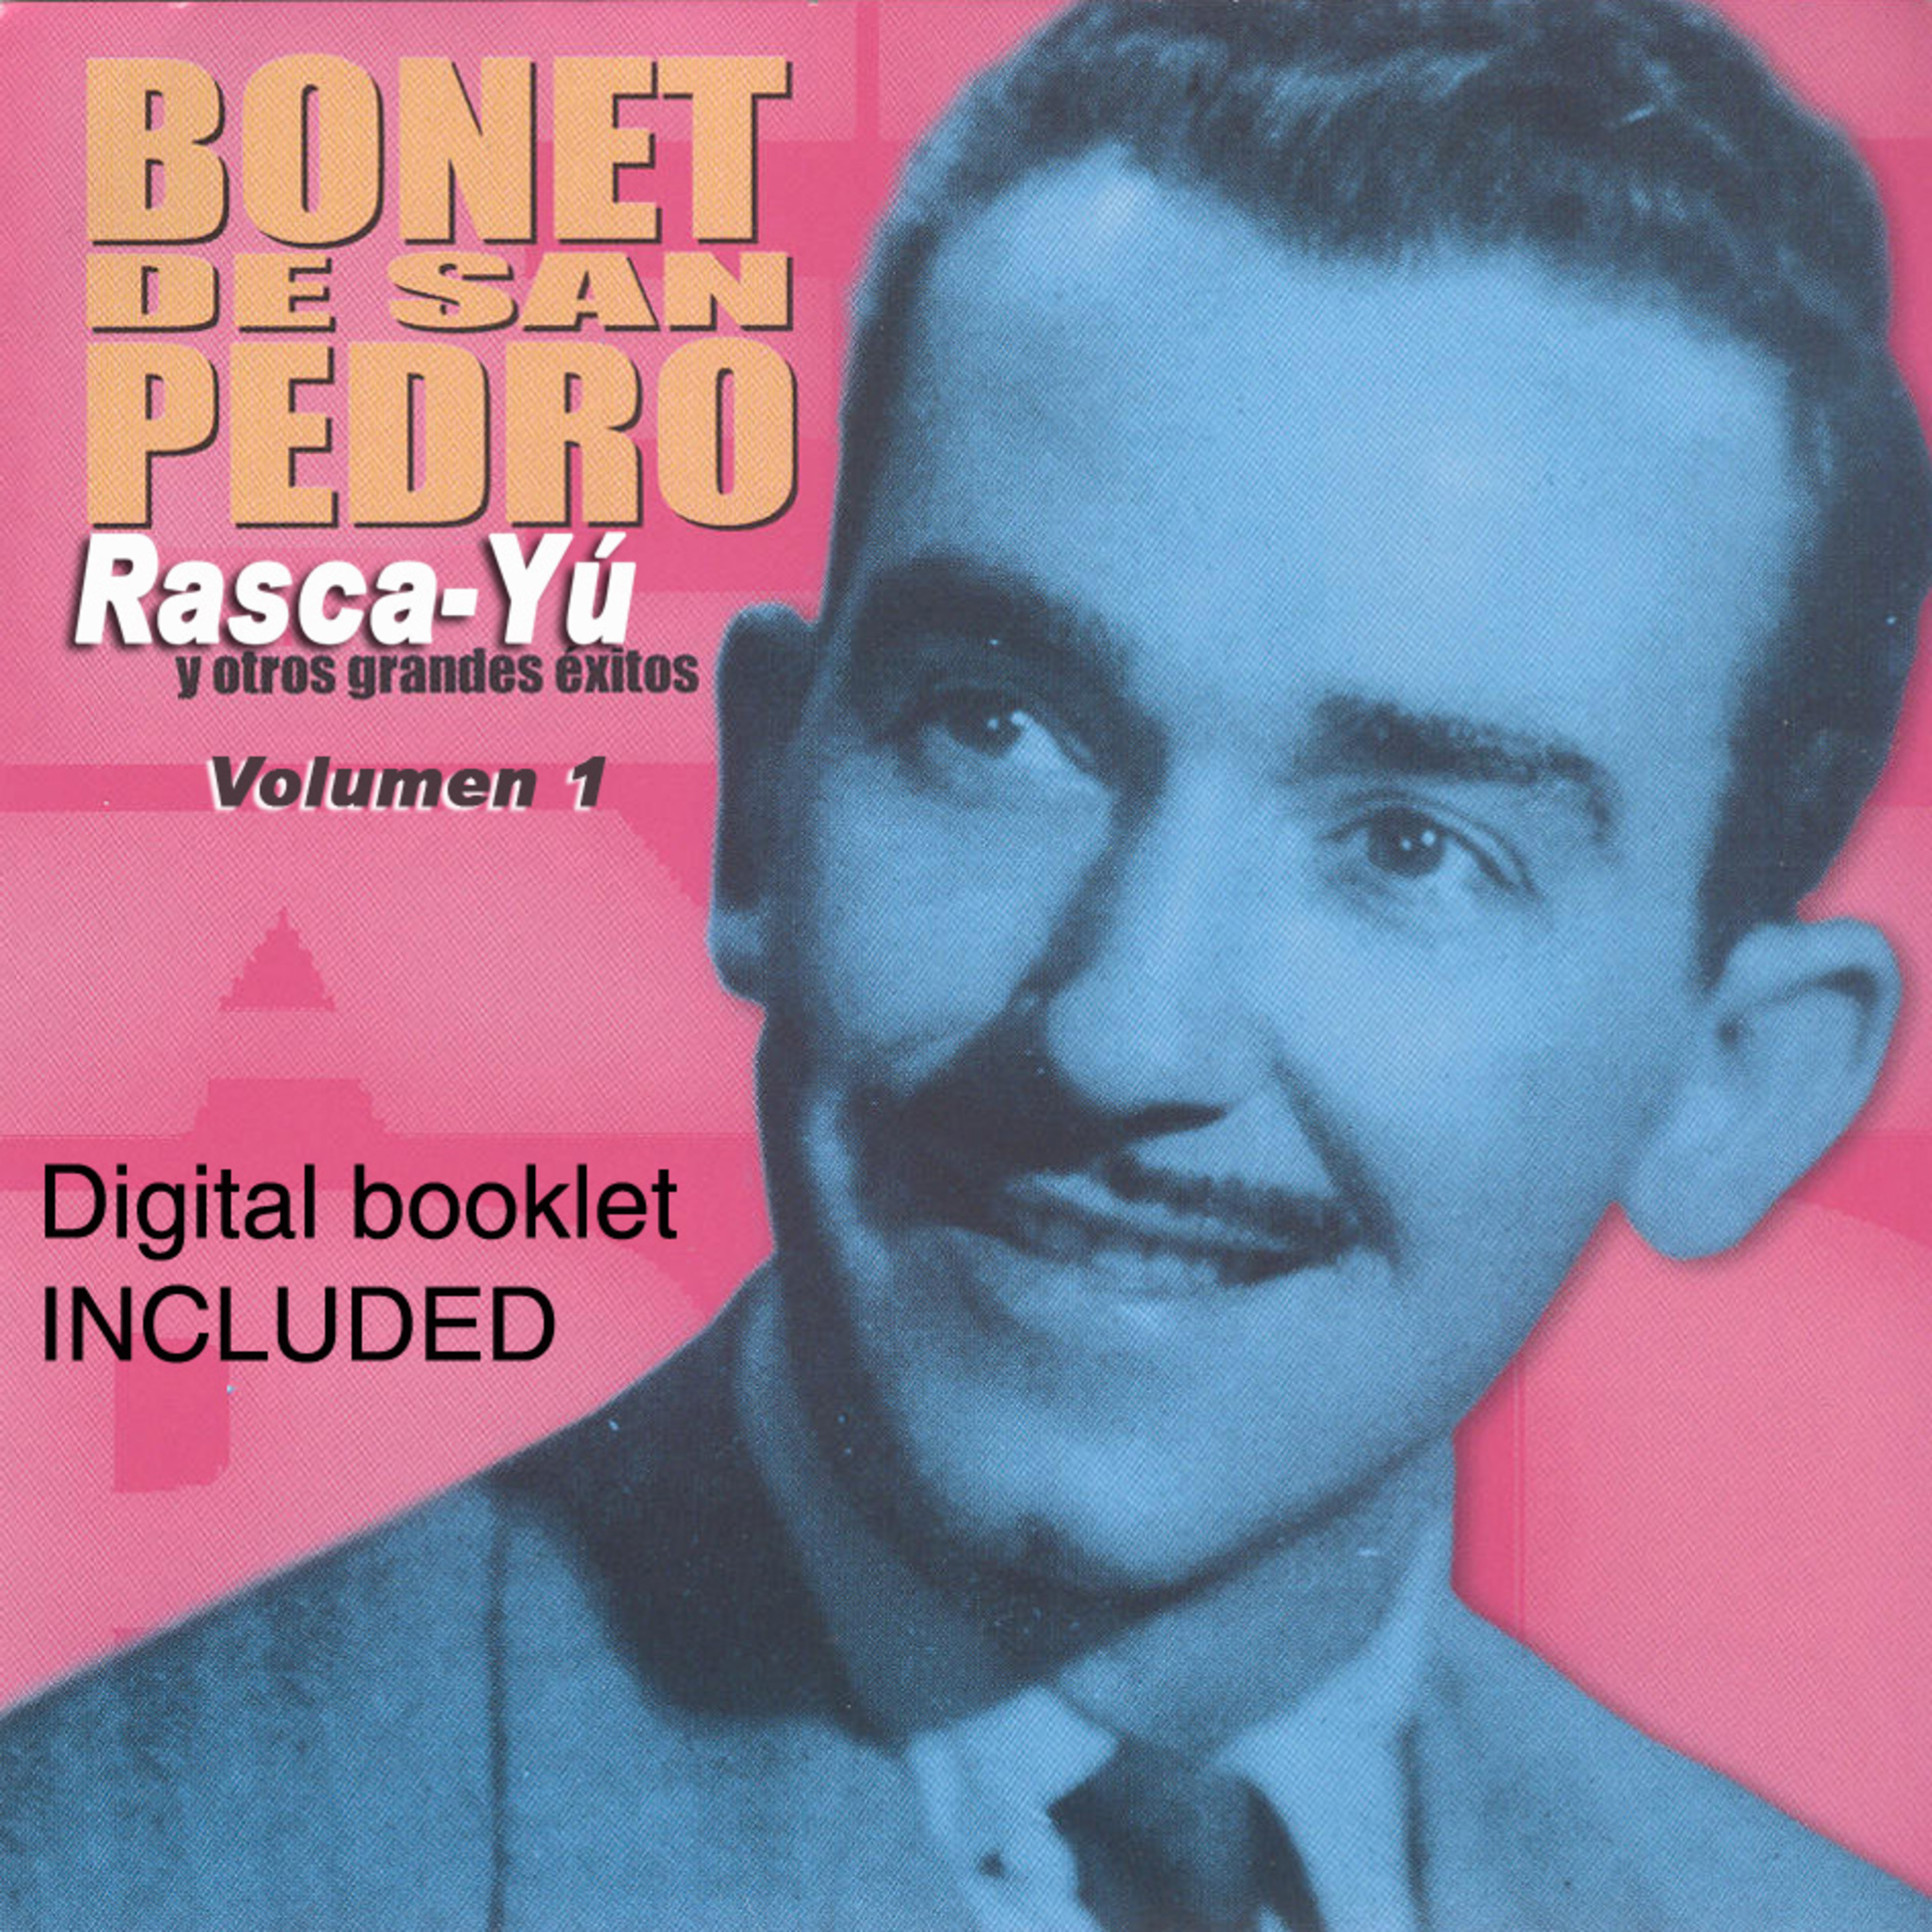 Rasca-Yu y Otros Grandes Exitos de Bonet de San Pedro, Vol. 1